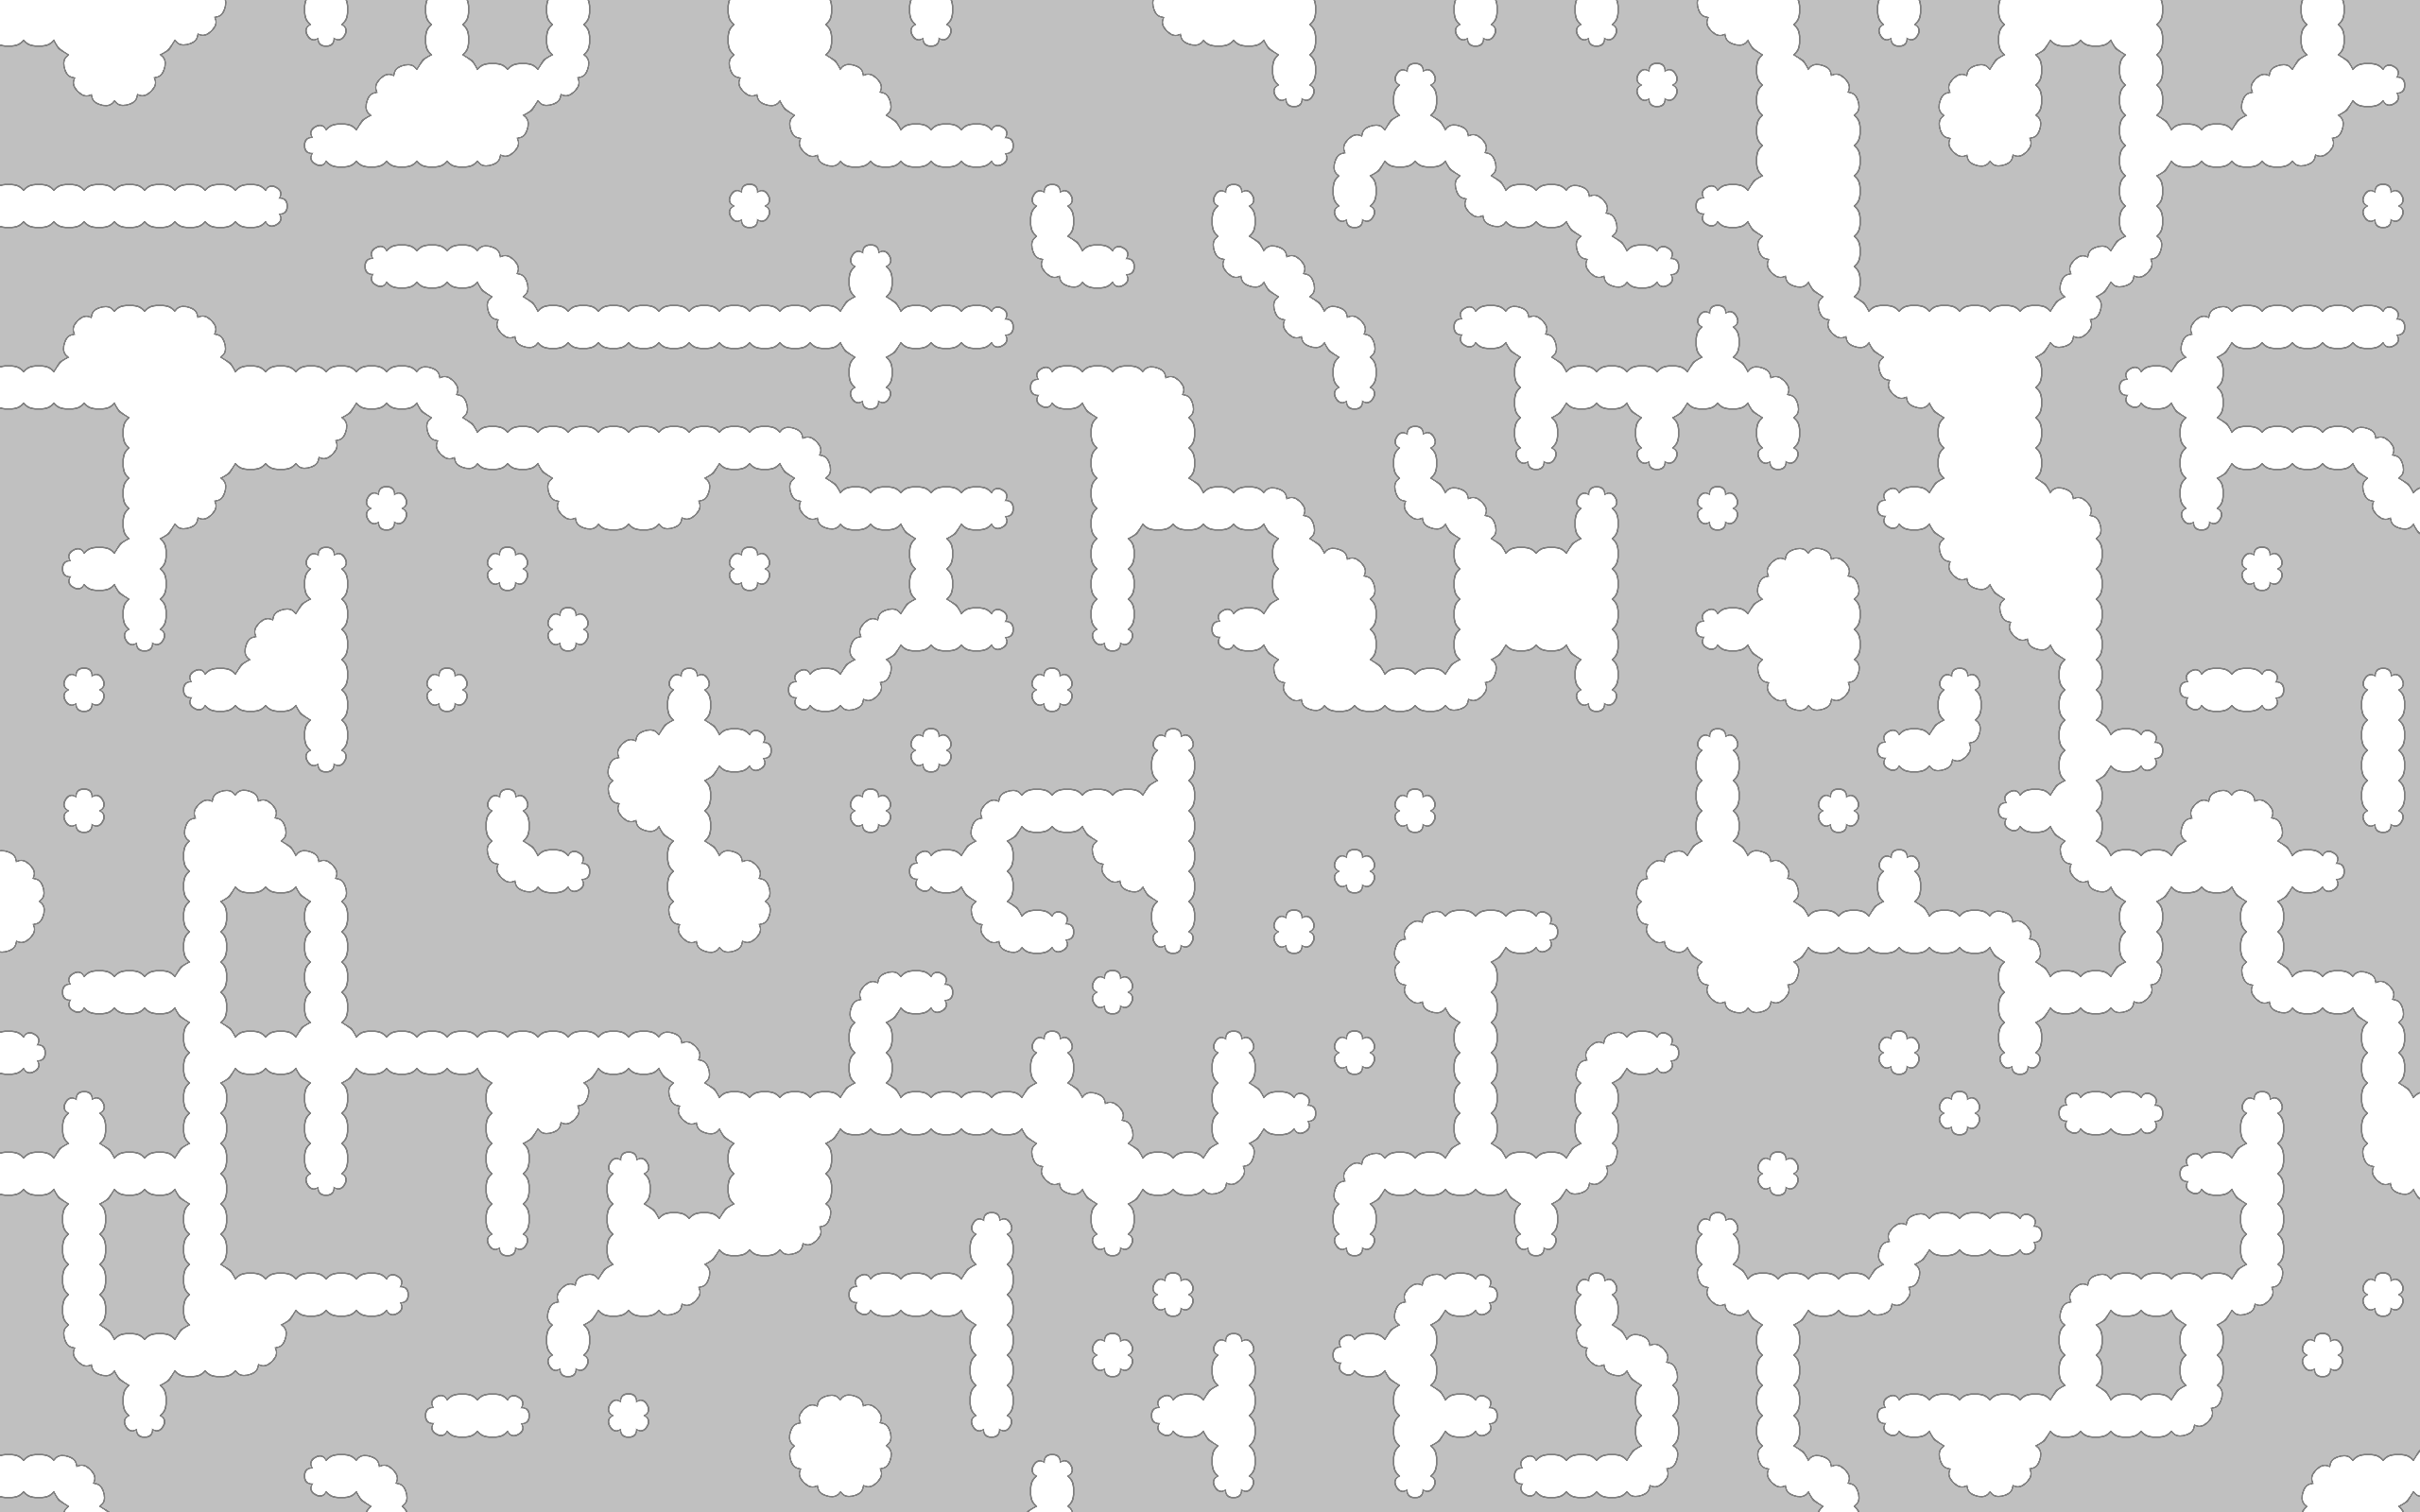 tiled-mapGrid-01.png